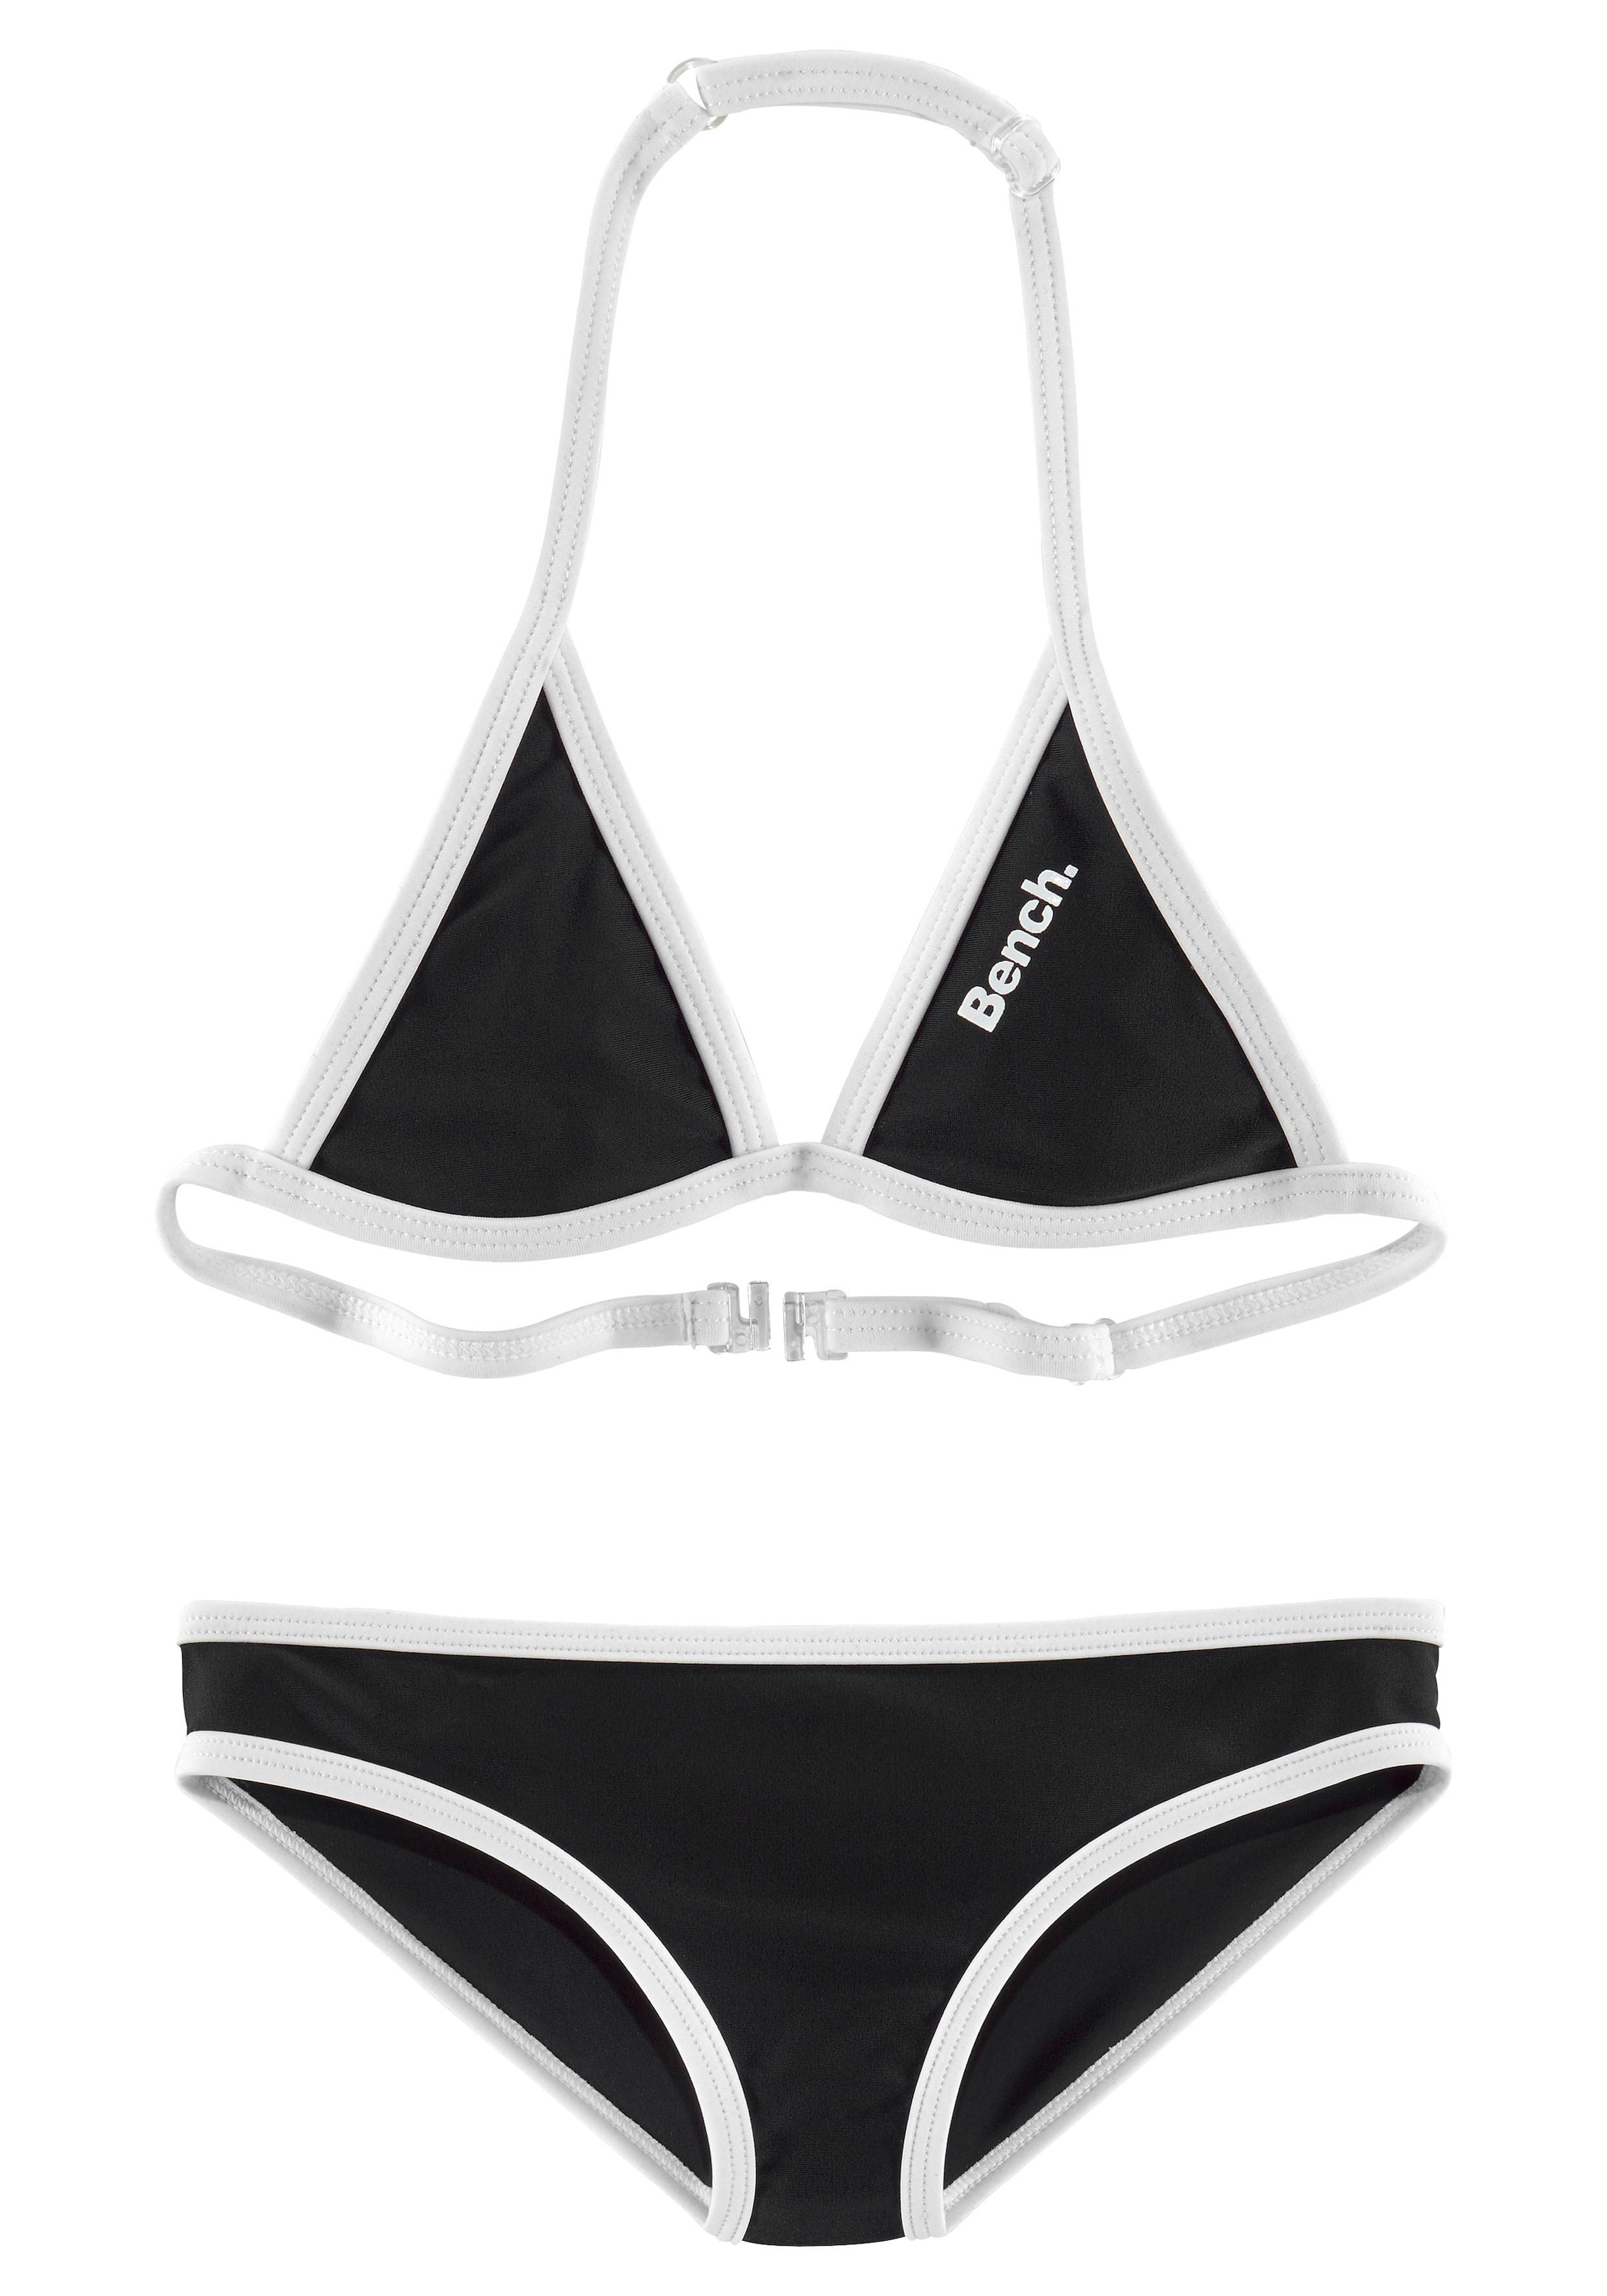 Logoprint Hose Top mit Triangel-Bikini, online bestellen und Bench. an